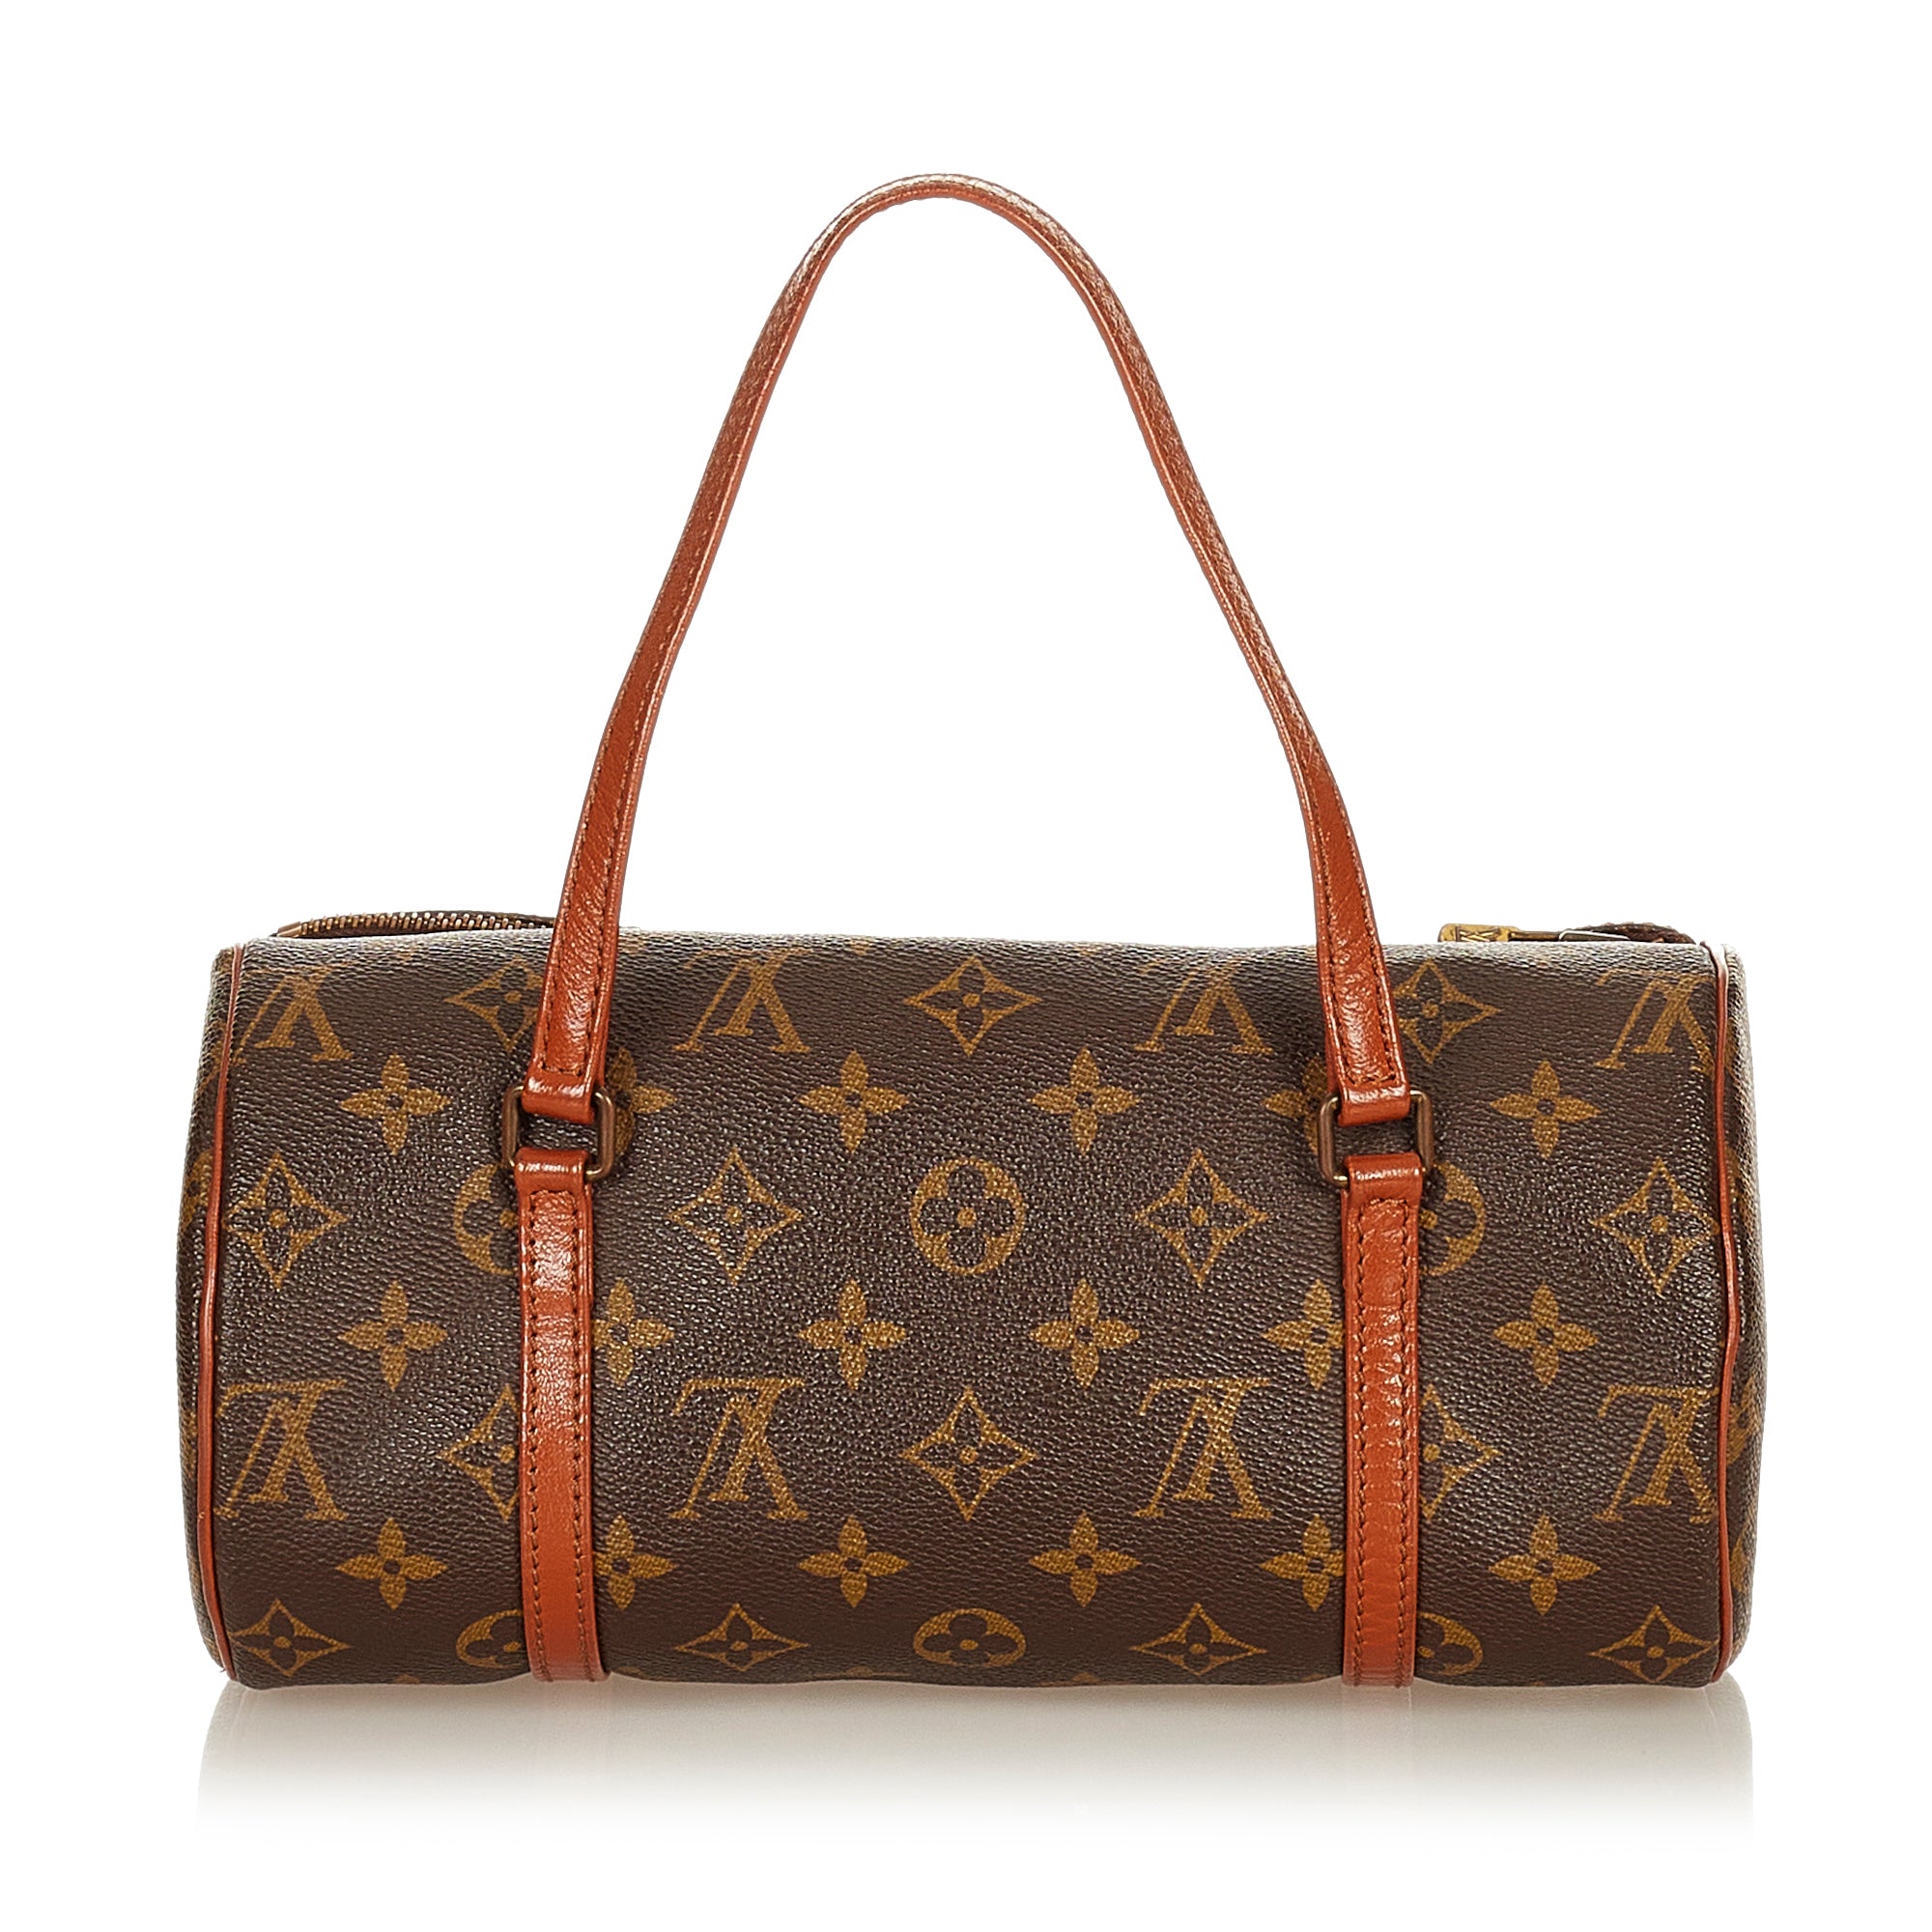 Authentic-Louis-Vuitton-Monogram-Papillon-26-Hand-Bag-Old-Style